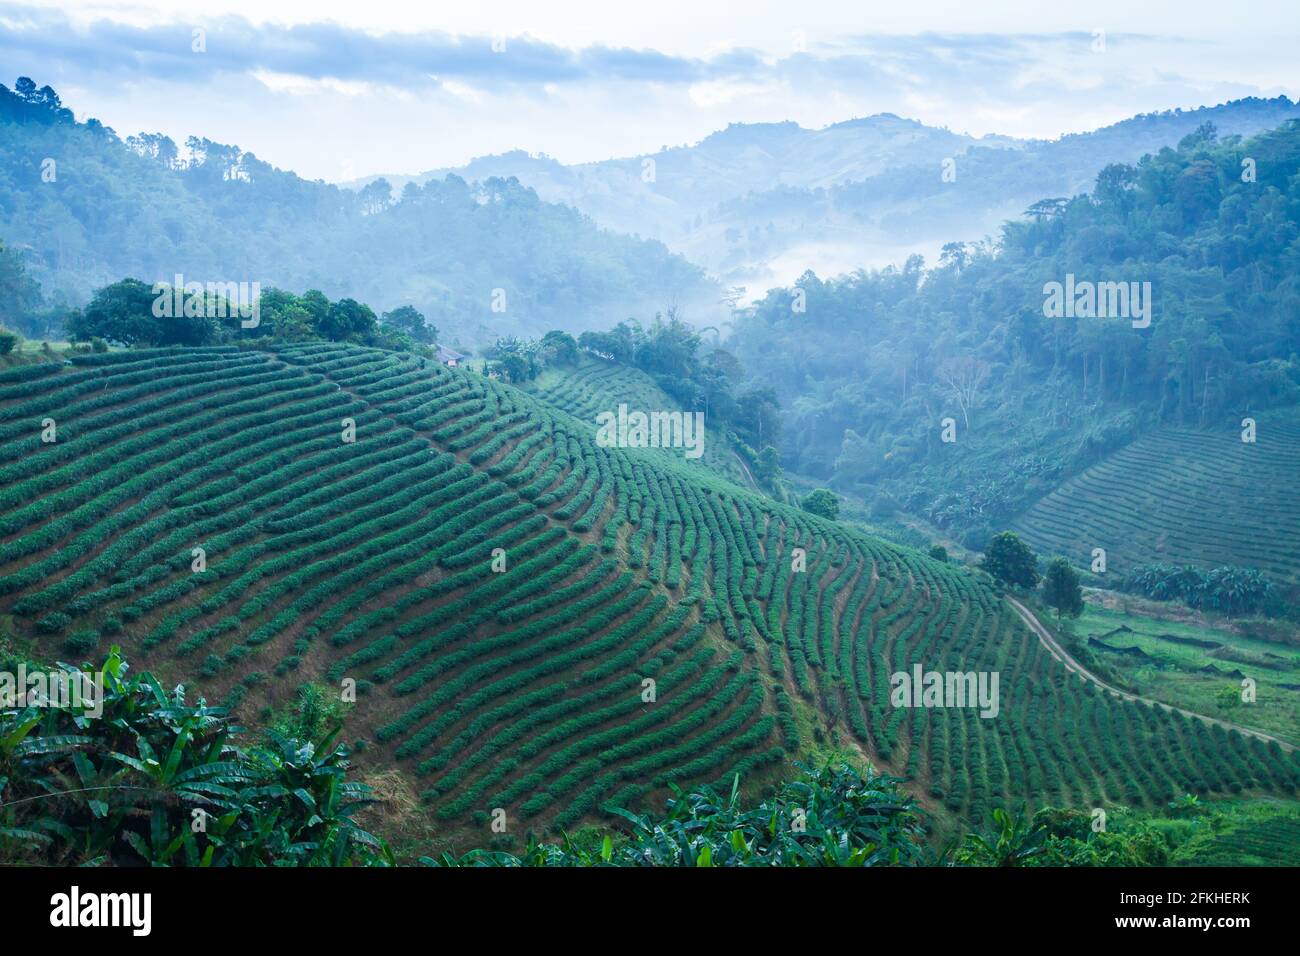 Landschaft von Teeplantagen im Morgennebel, schöne Schichten und Muster von Teeterassen Felder in einem tropischen Wald. Chiang Rai, Thailand. Stockfoto